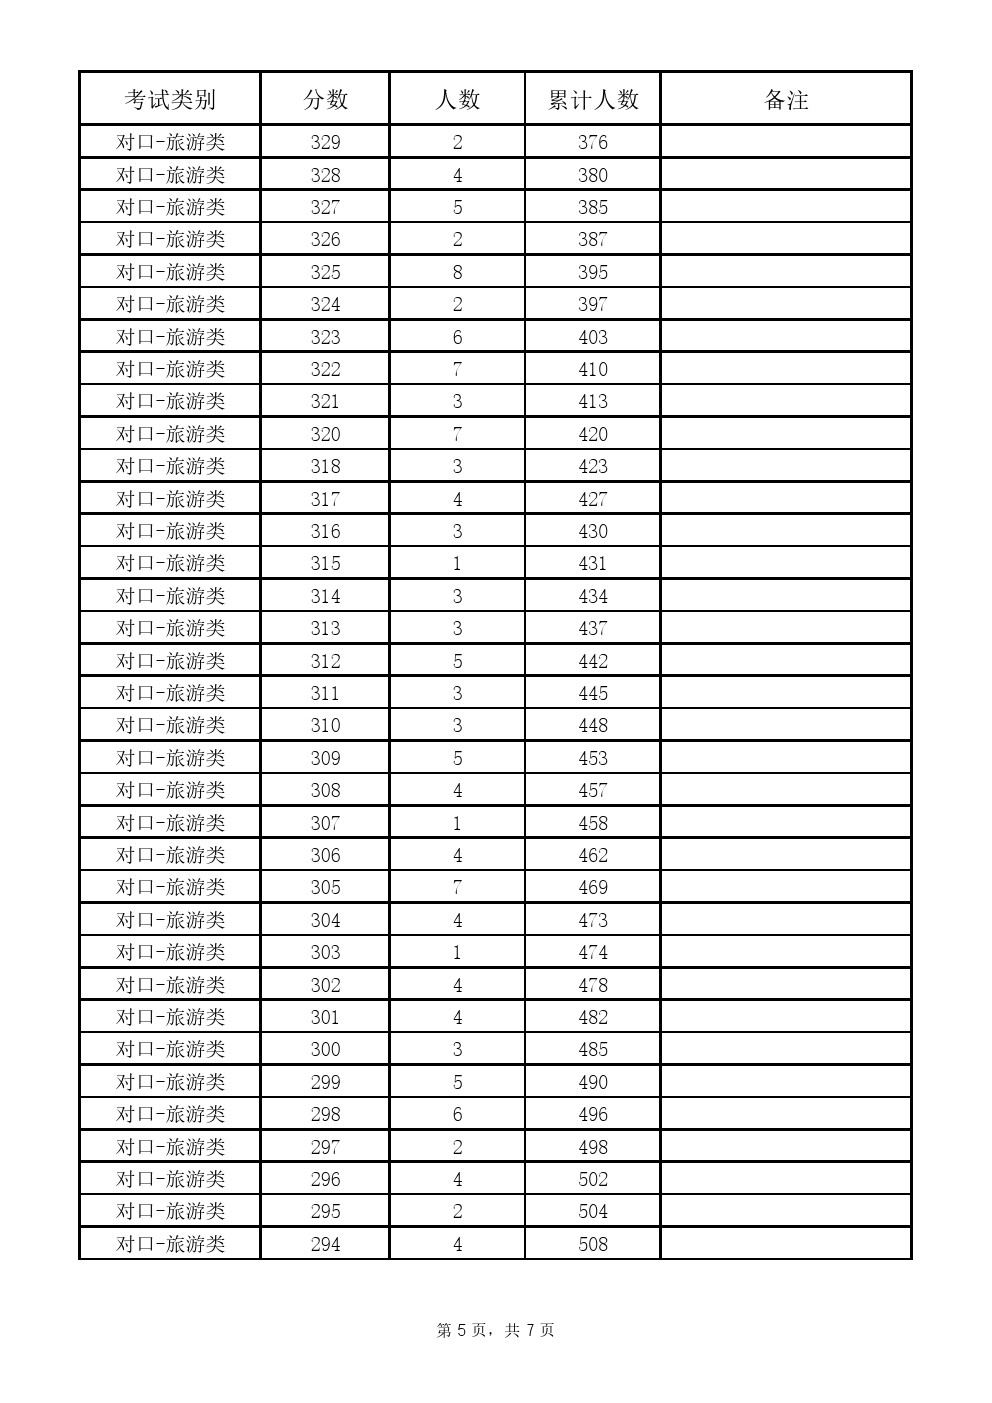 2019年河北省高职单招考试对口旅游类一分一档表 